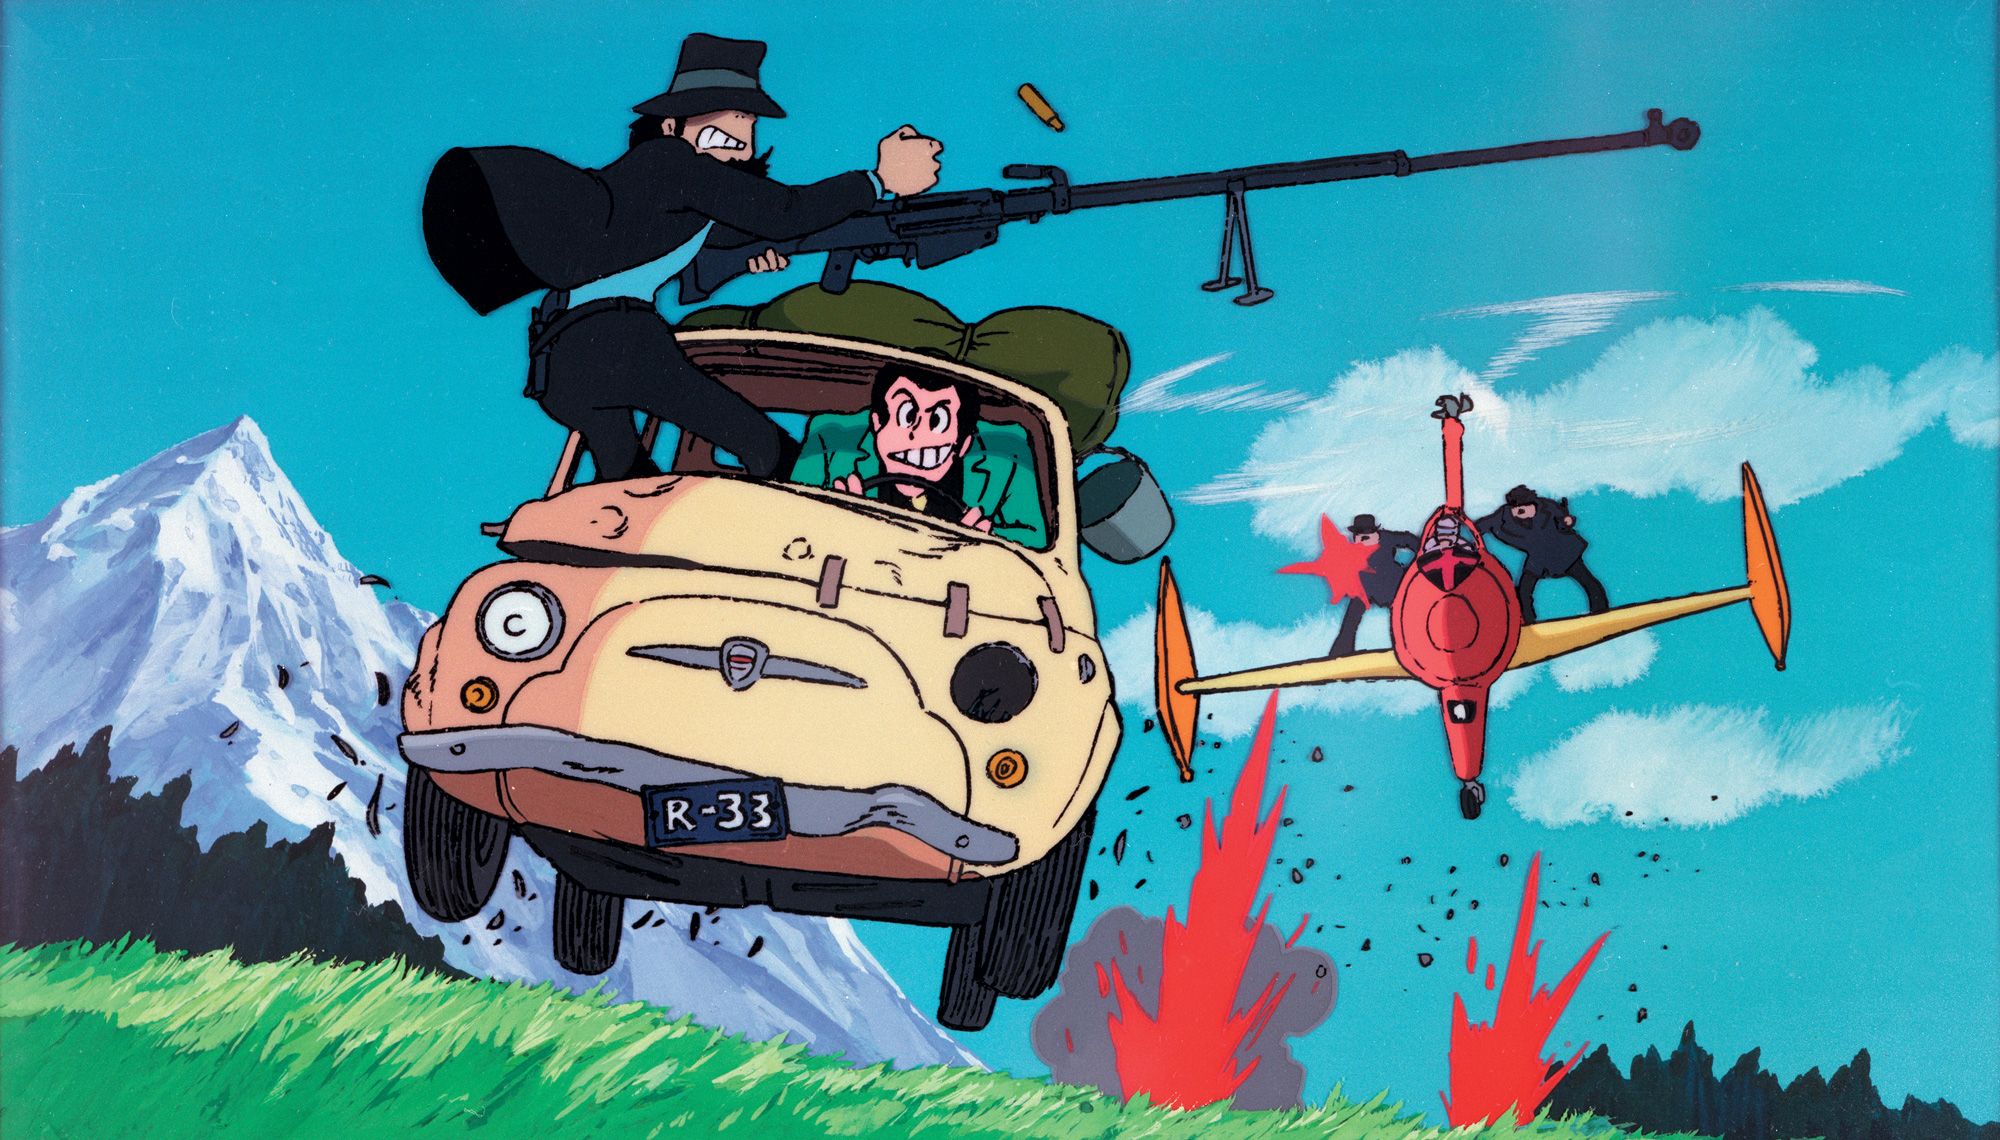 #Zurück in deutschen Kinos: Diese beiden Anime-Klassiker von Hayao Miyazaki könnt ihr bald sehen